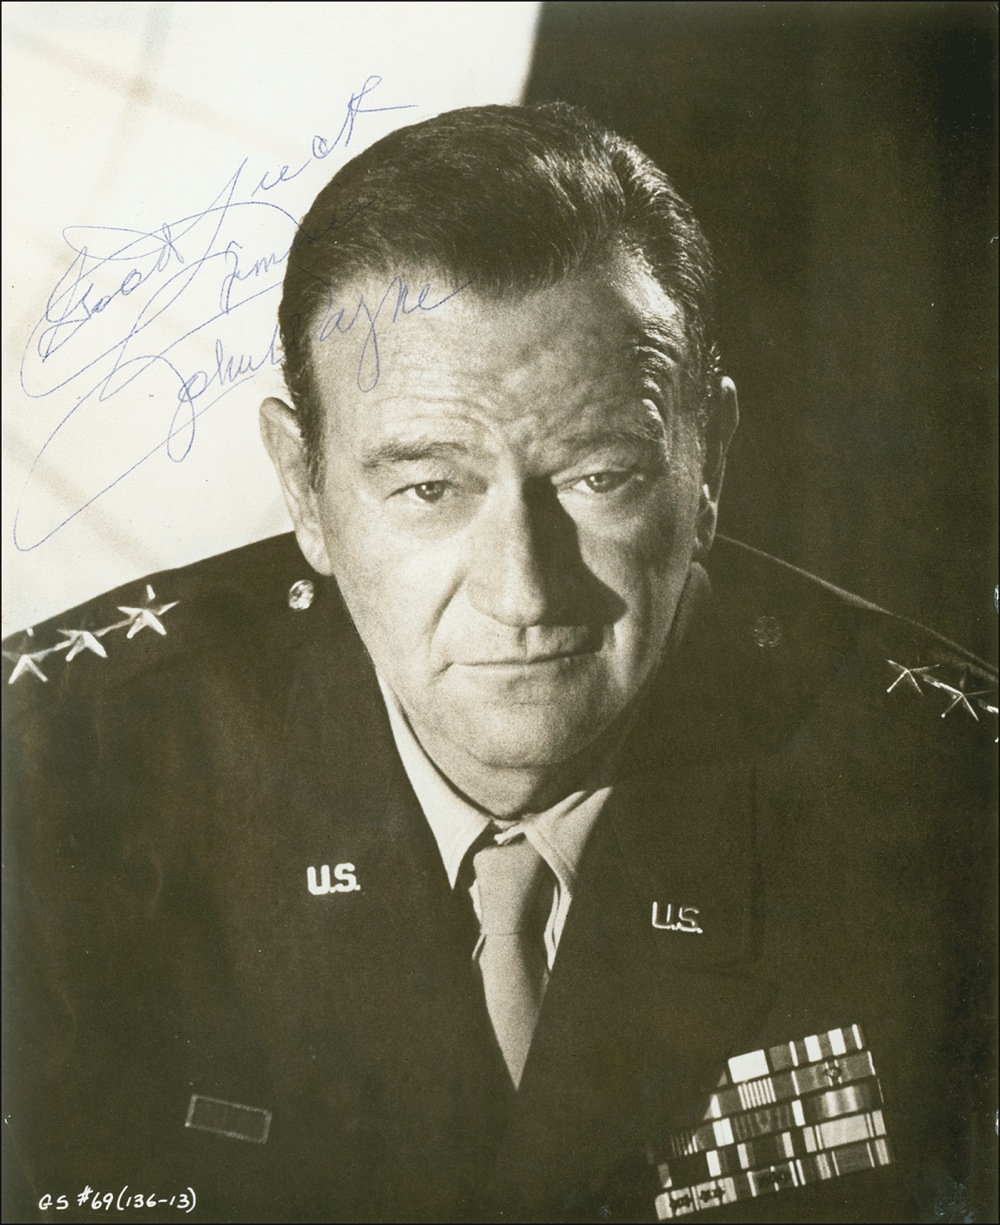 Lot #1046 John Wayne